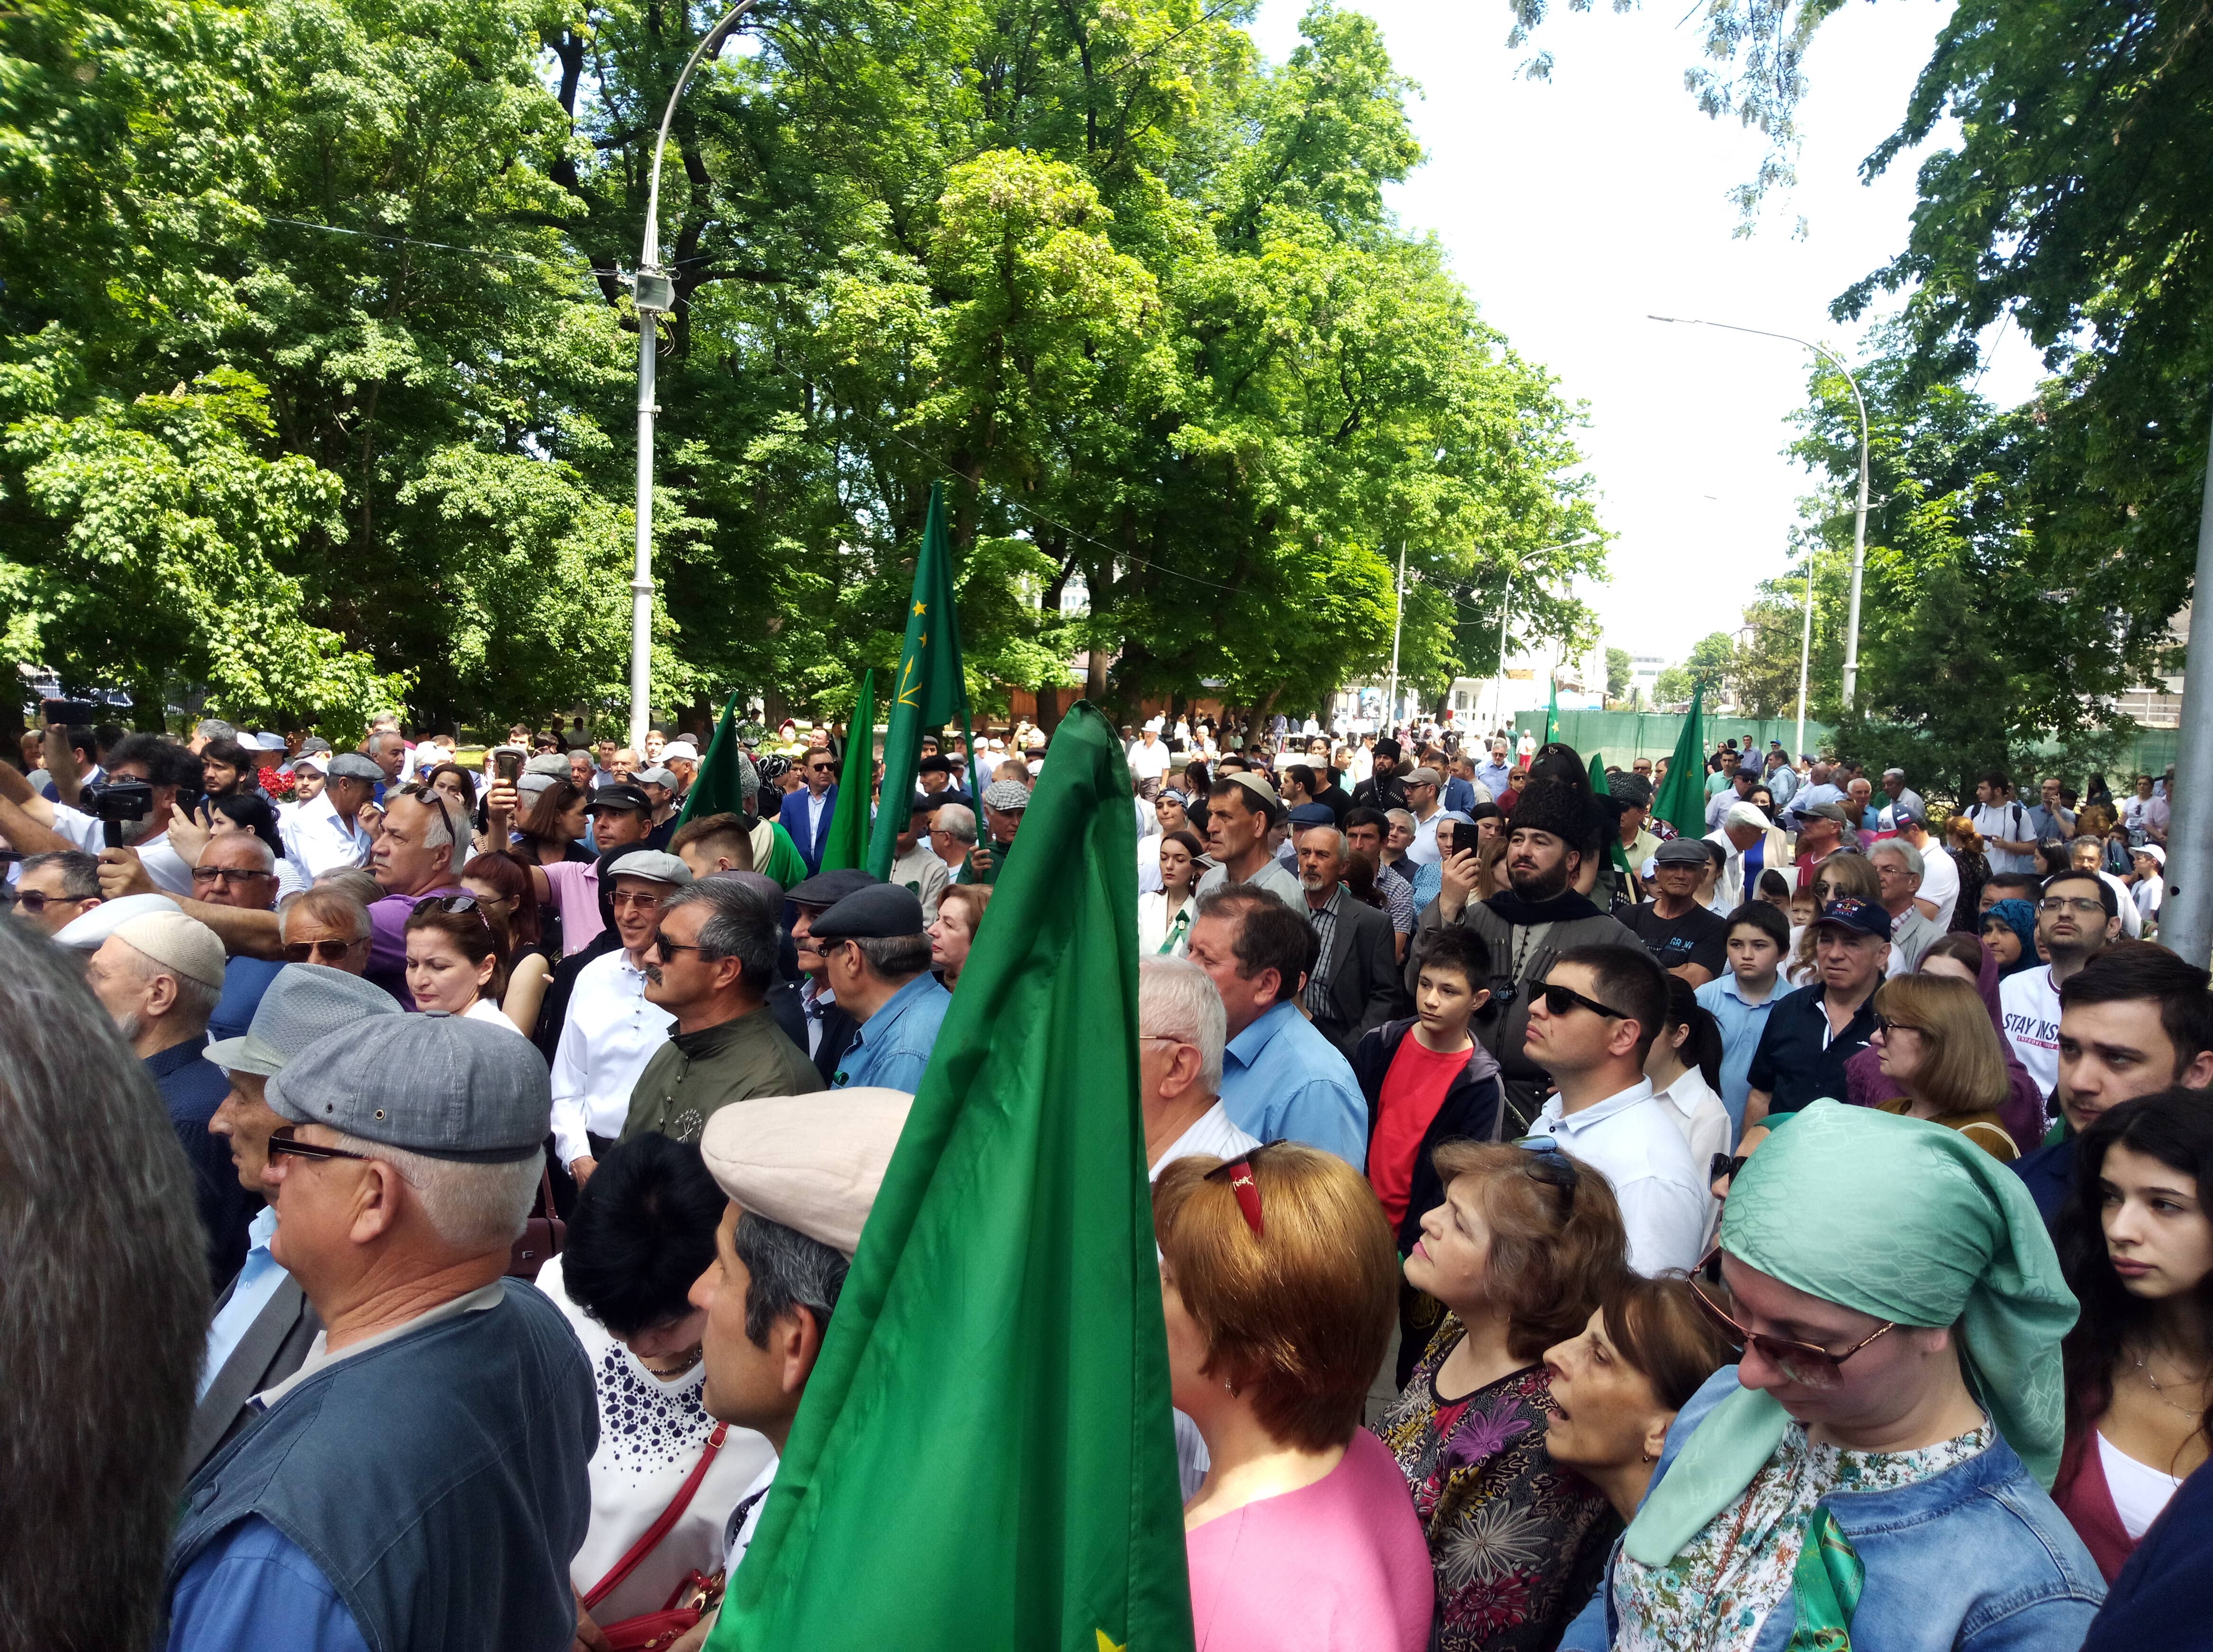 Участники акции у памятника "Древо жизни", 21 мая 2021 года. Фото Людмилы Маратовой для "Кавказского узла".